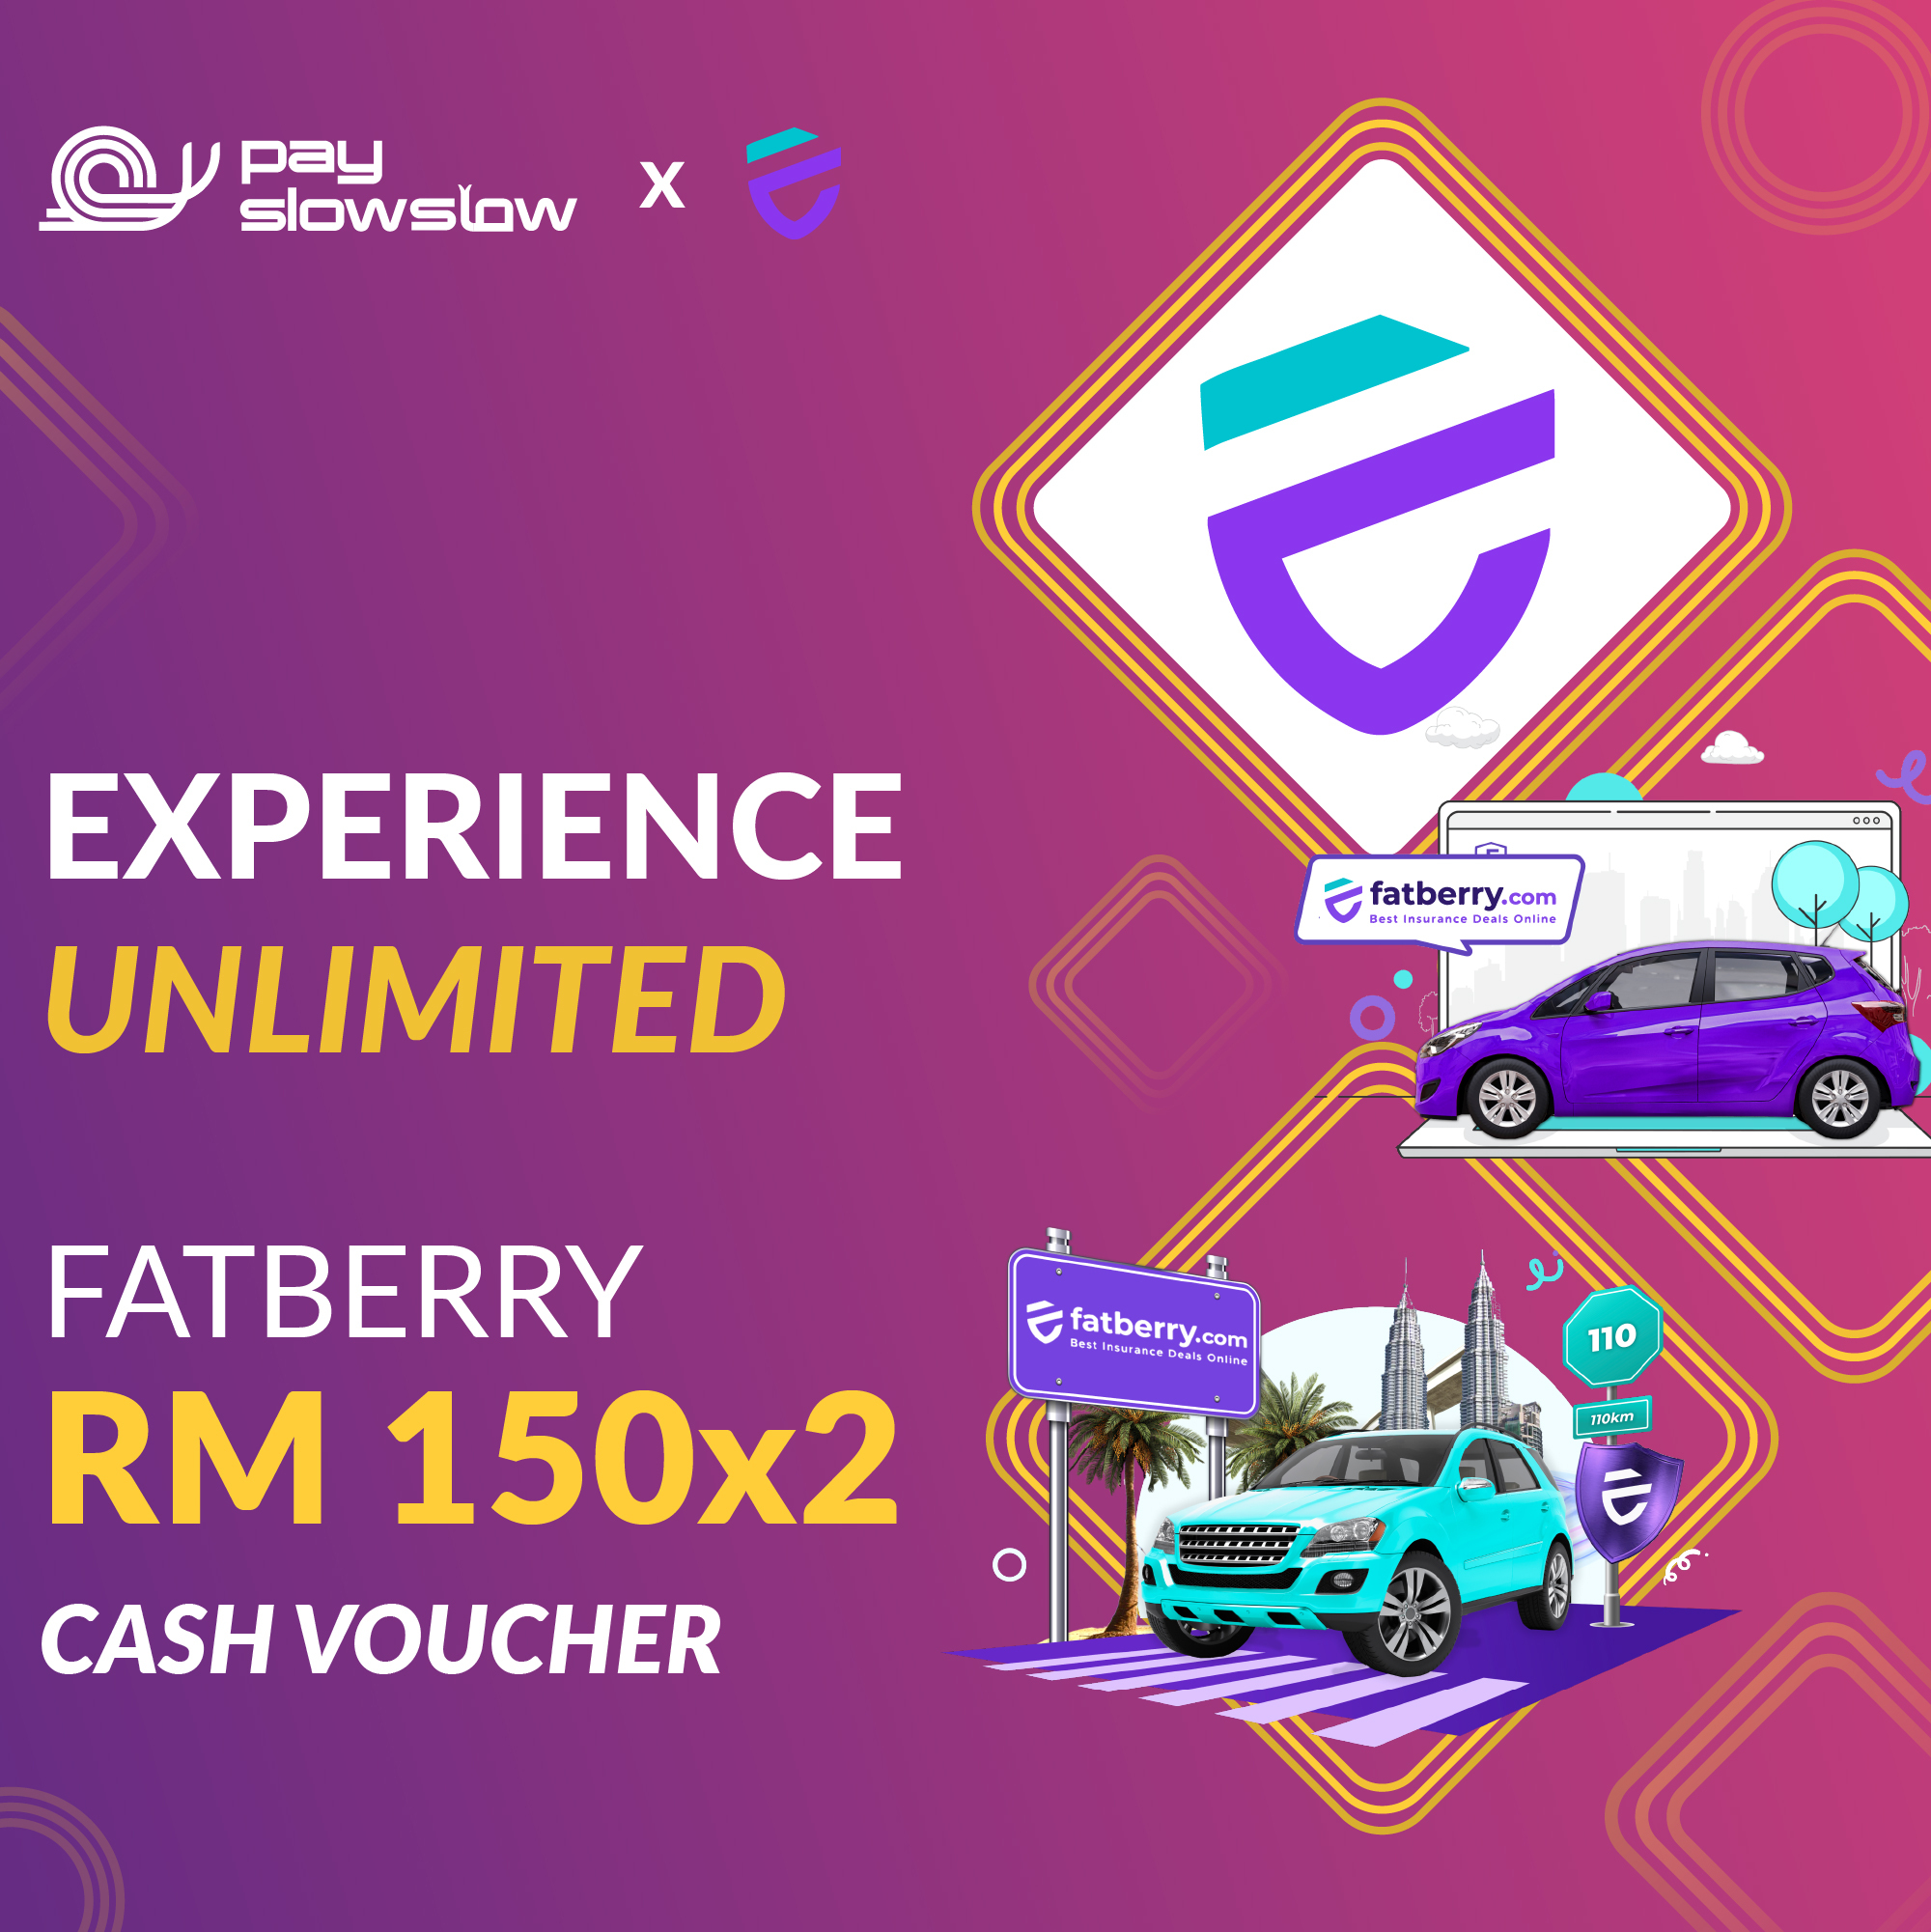 fatberry voucher RM150X2@2x-100.jpg